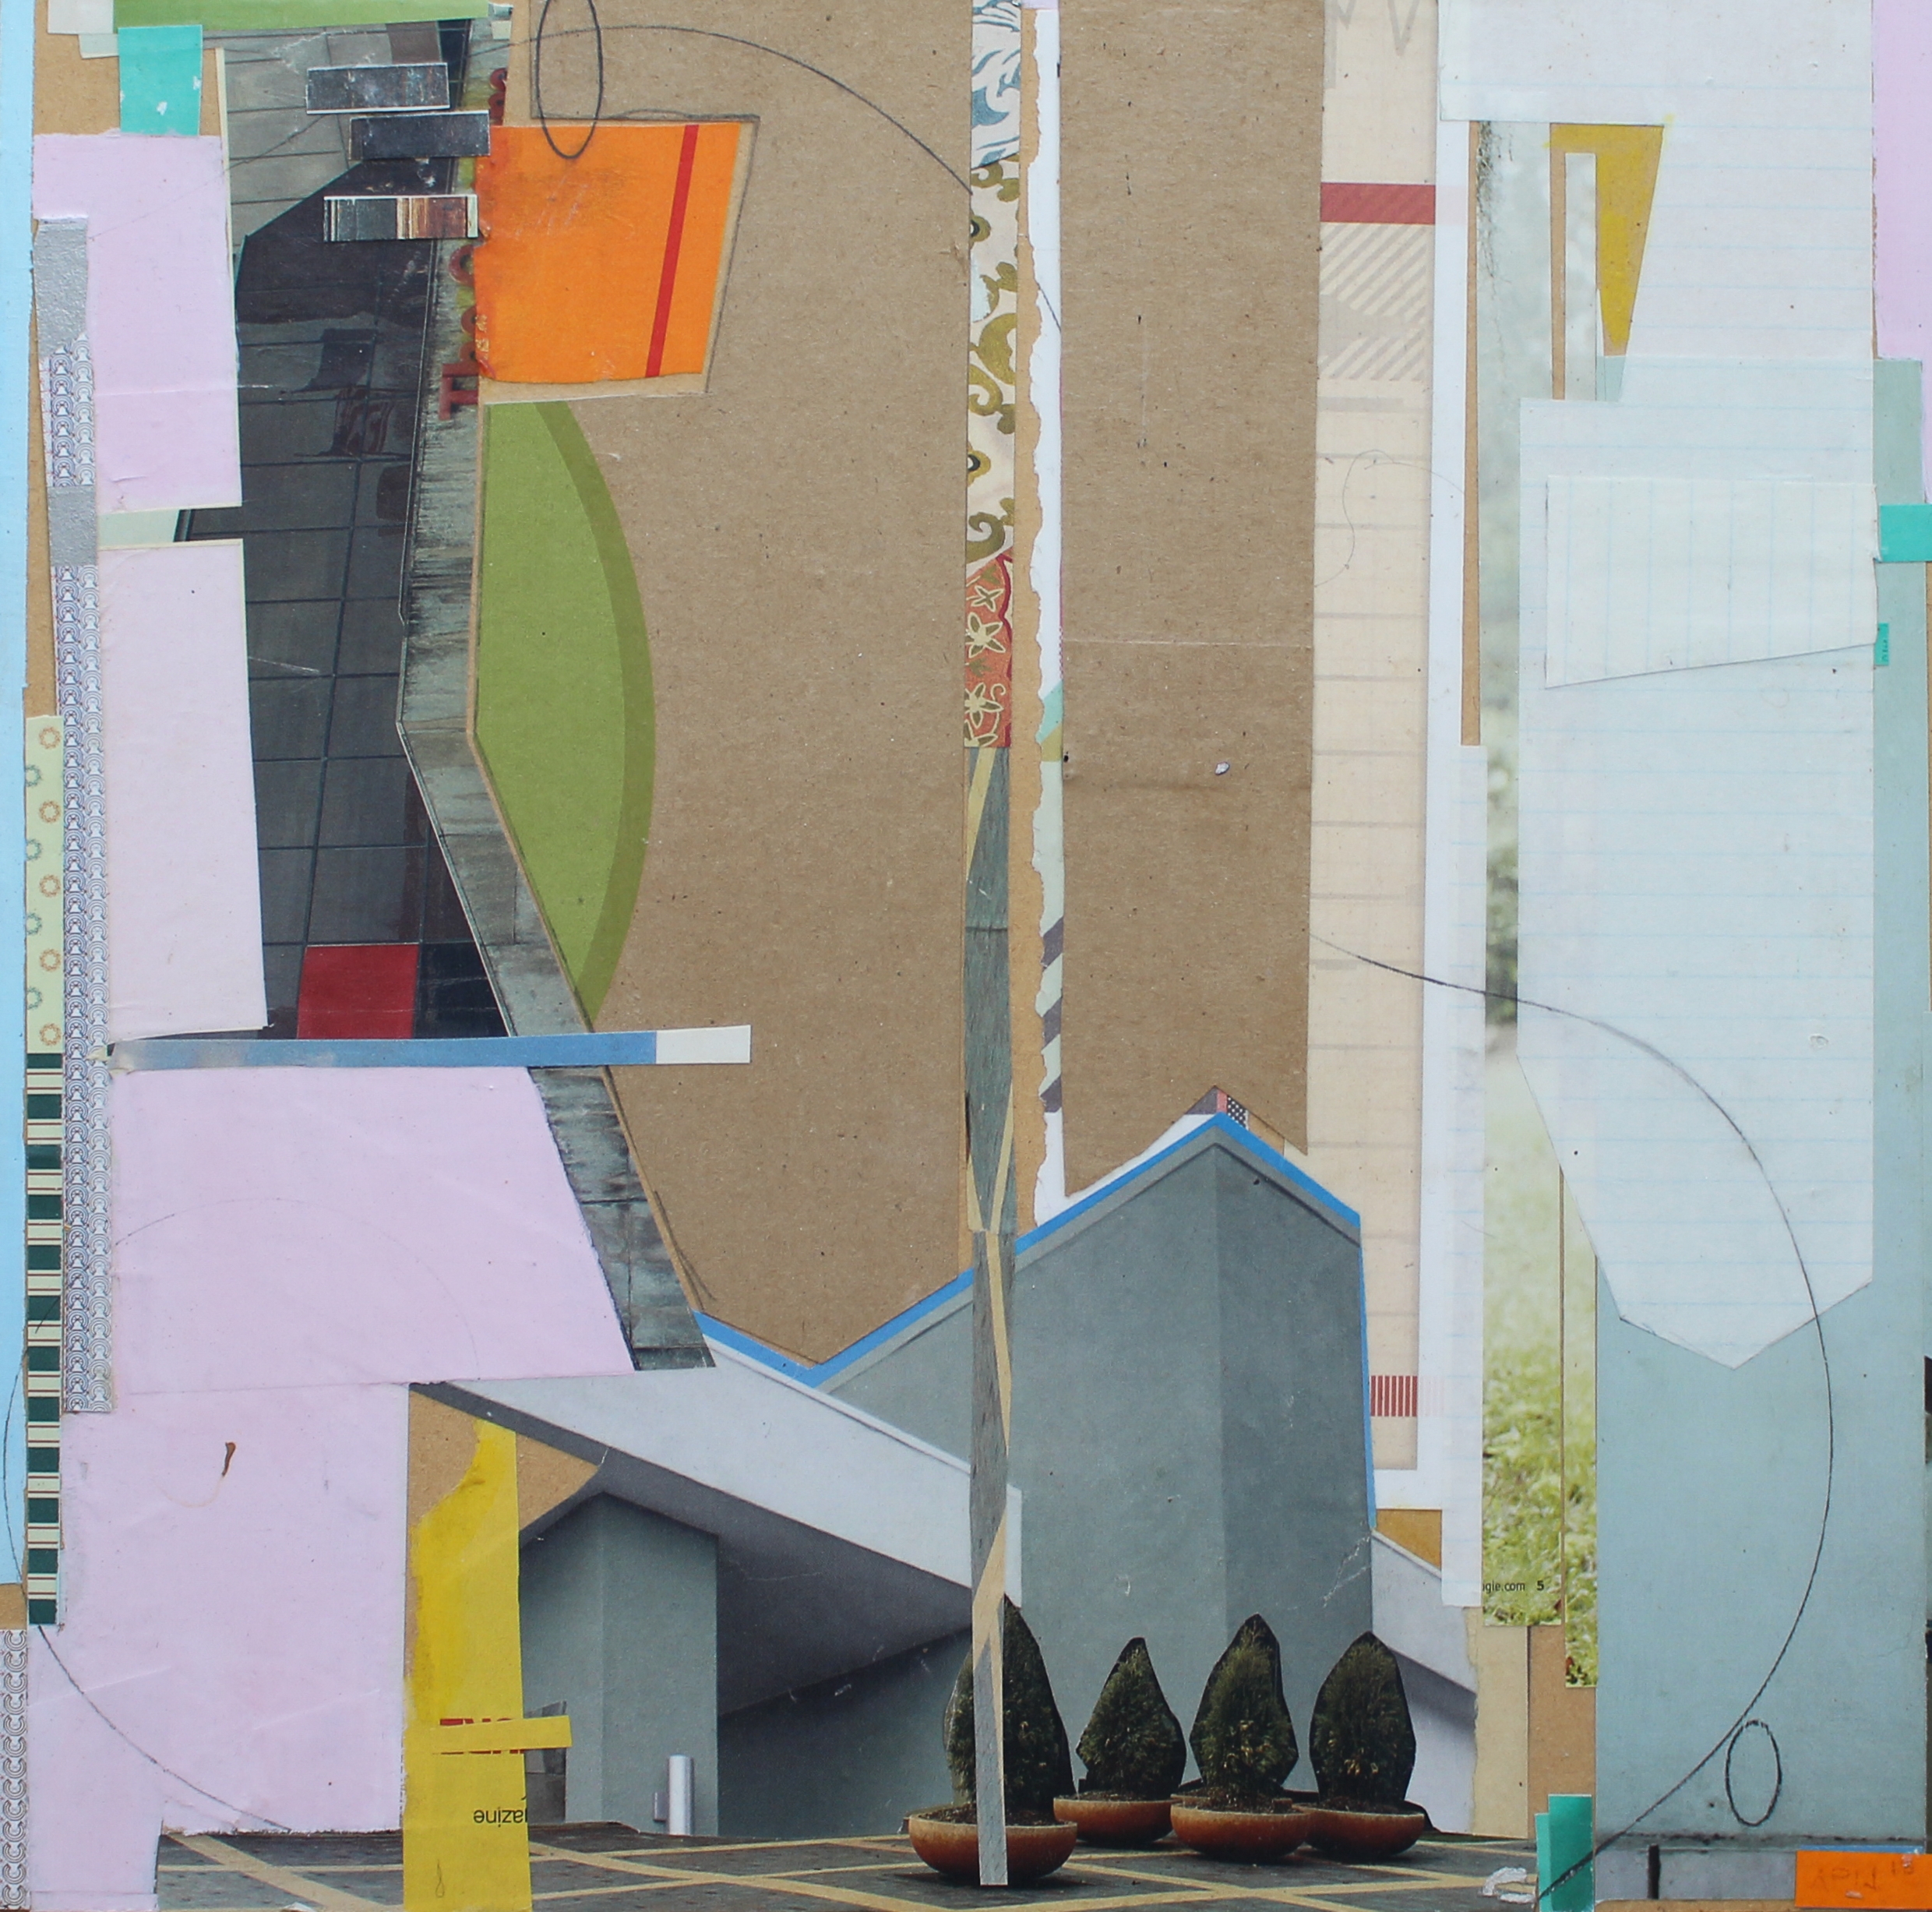 Four Trees, Mixed Media, 15 x 15", 2015